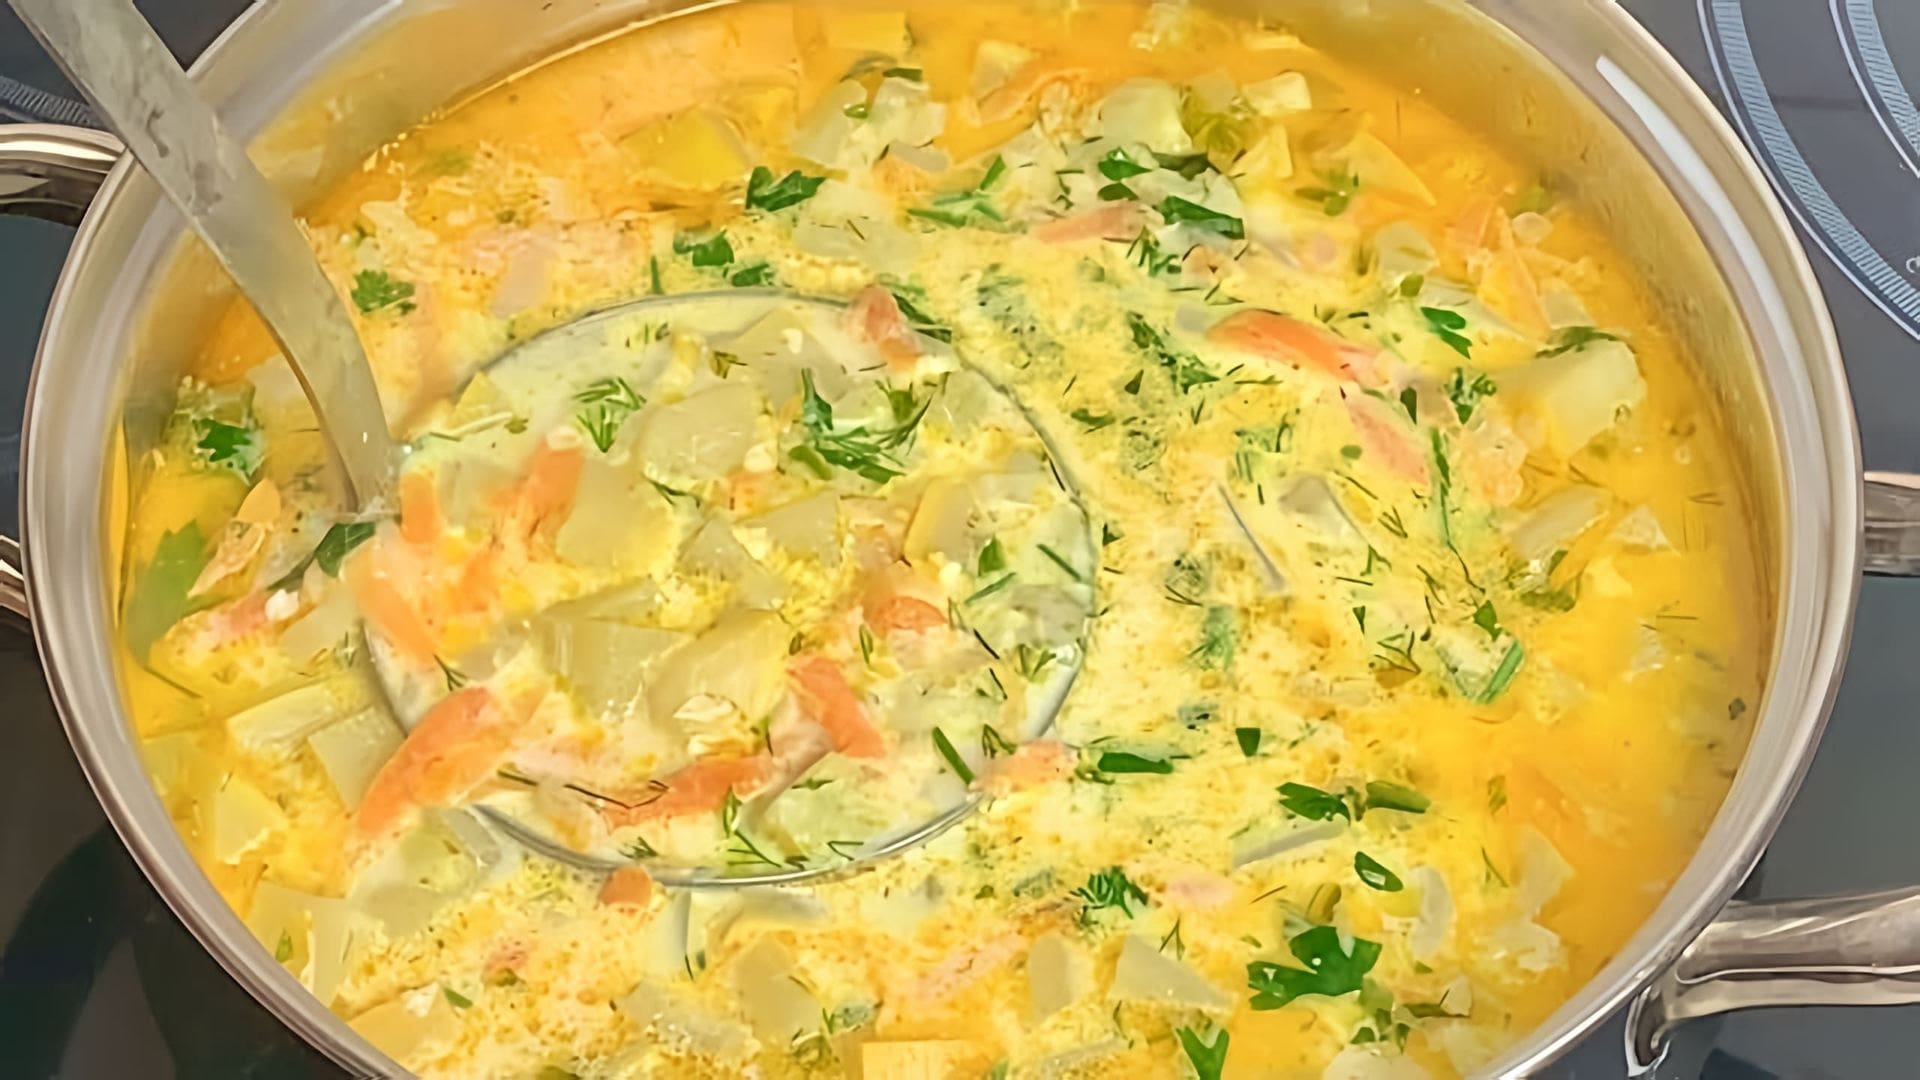 Суп содержит лук, морковь, цуккини, картофель и травы, такие как укроп и петрушка